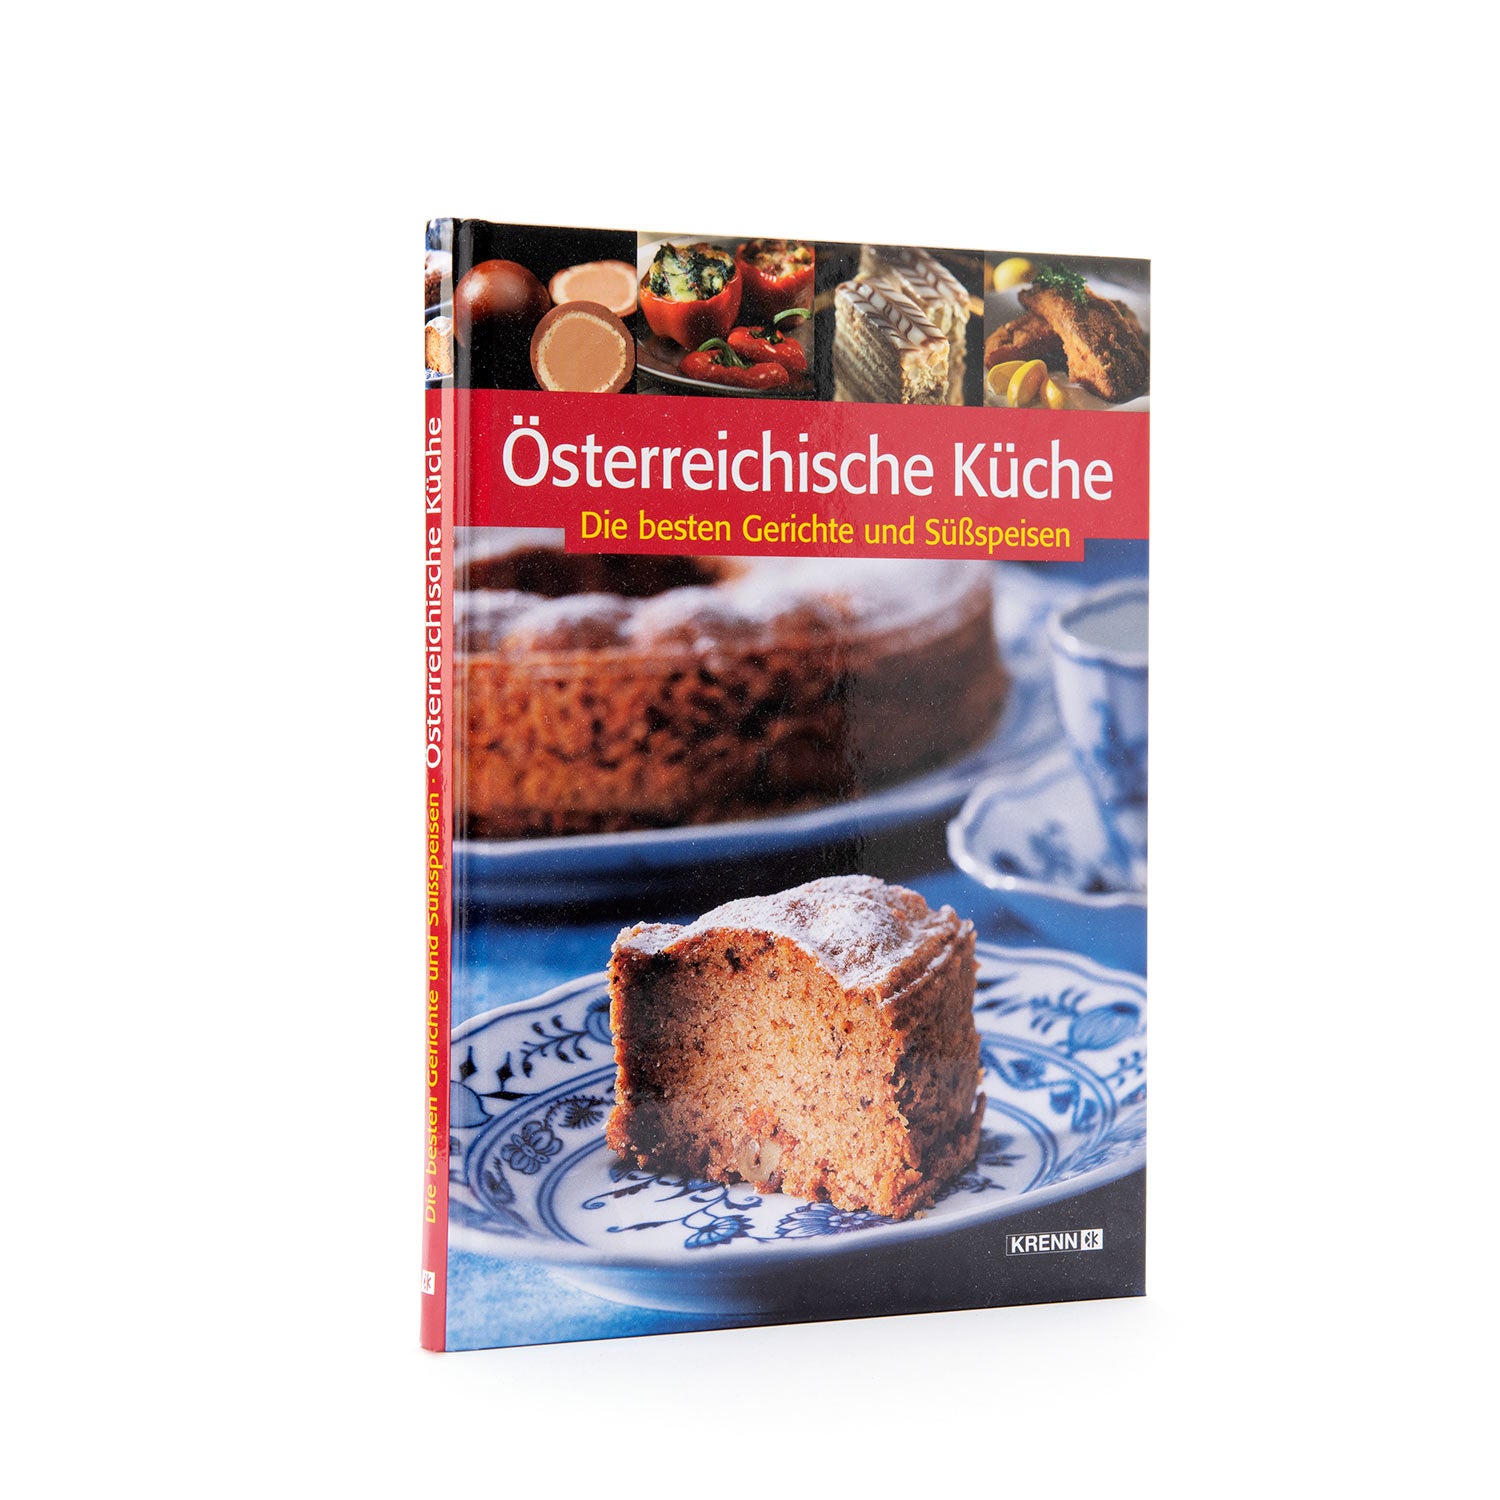 Osterreichische Kuche cookbook